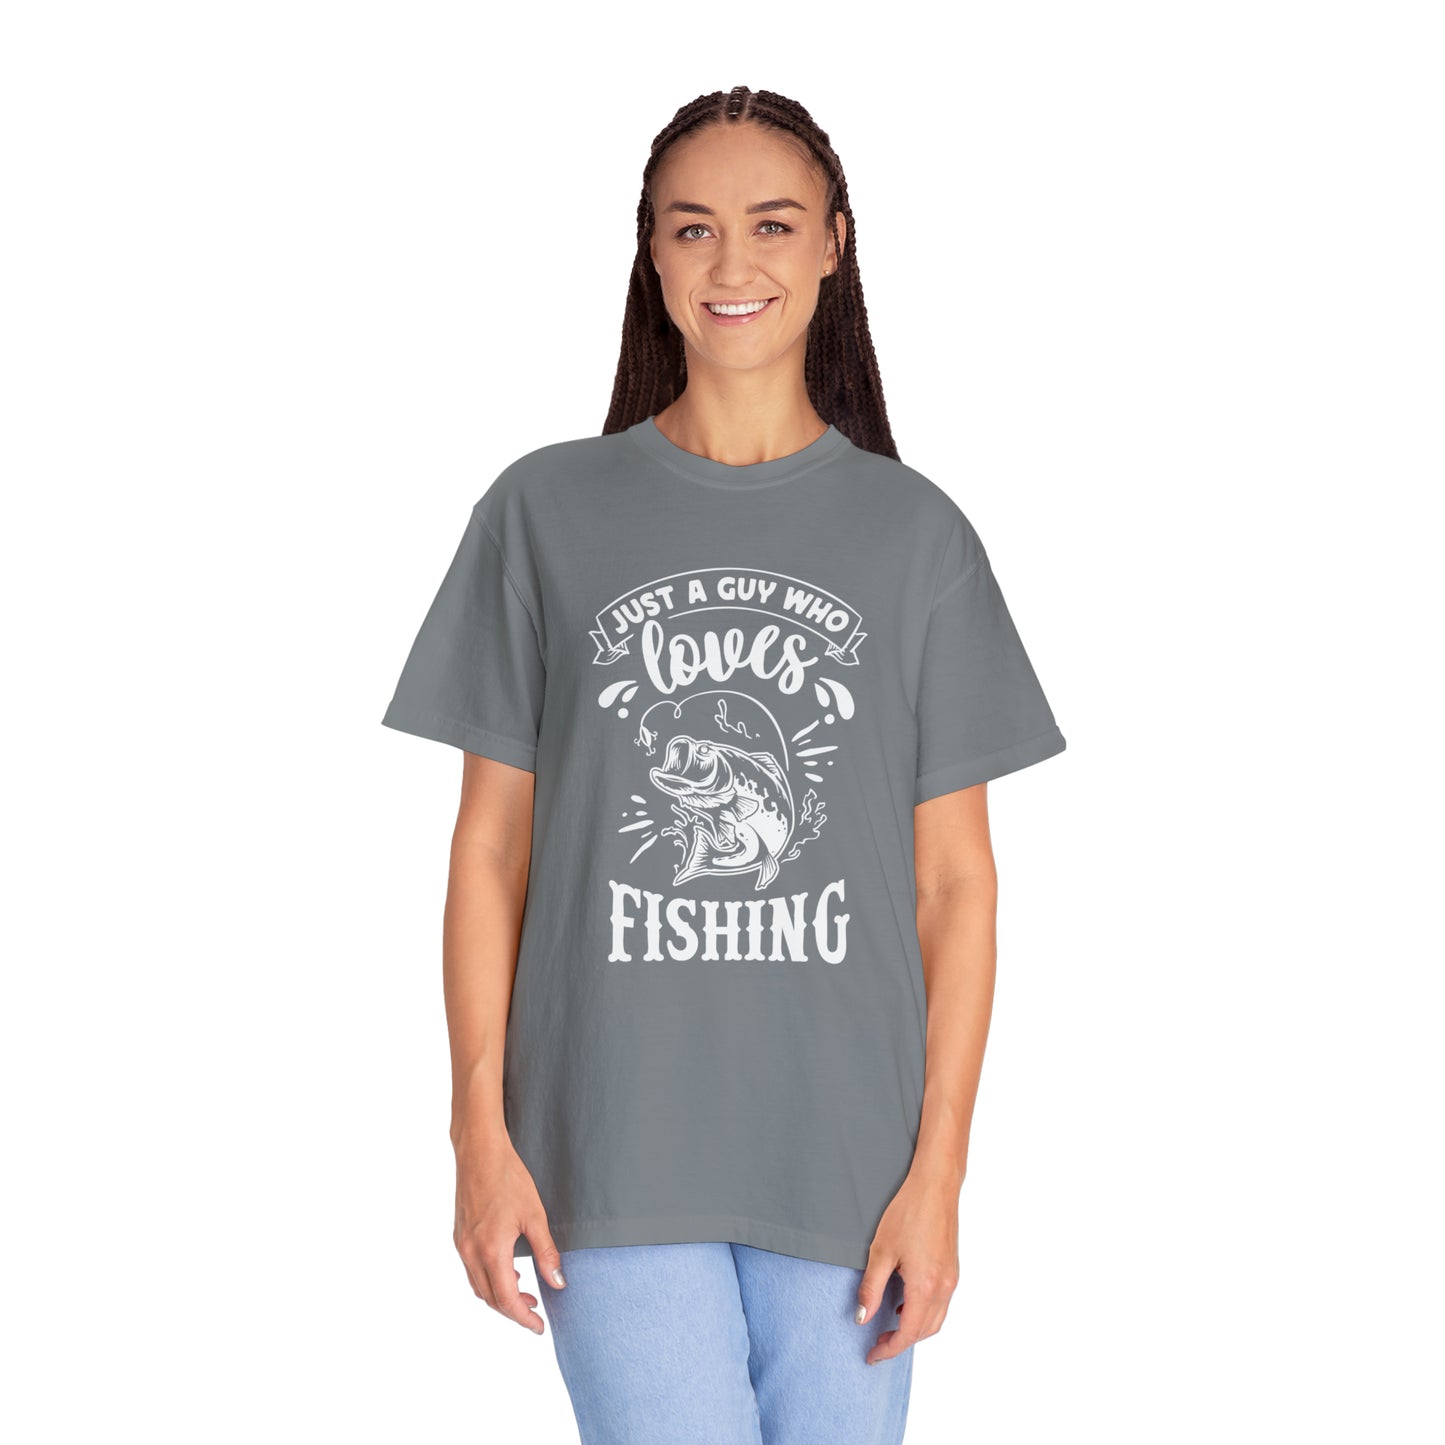 情熱的な釣り人: 釣りへの愛をスタイリッシュに表現 - T シャツ